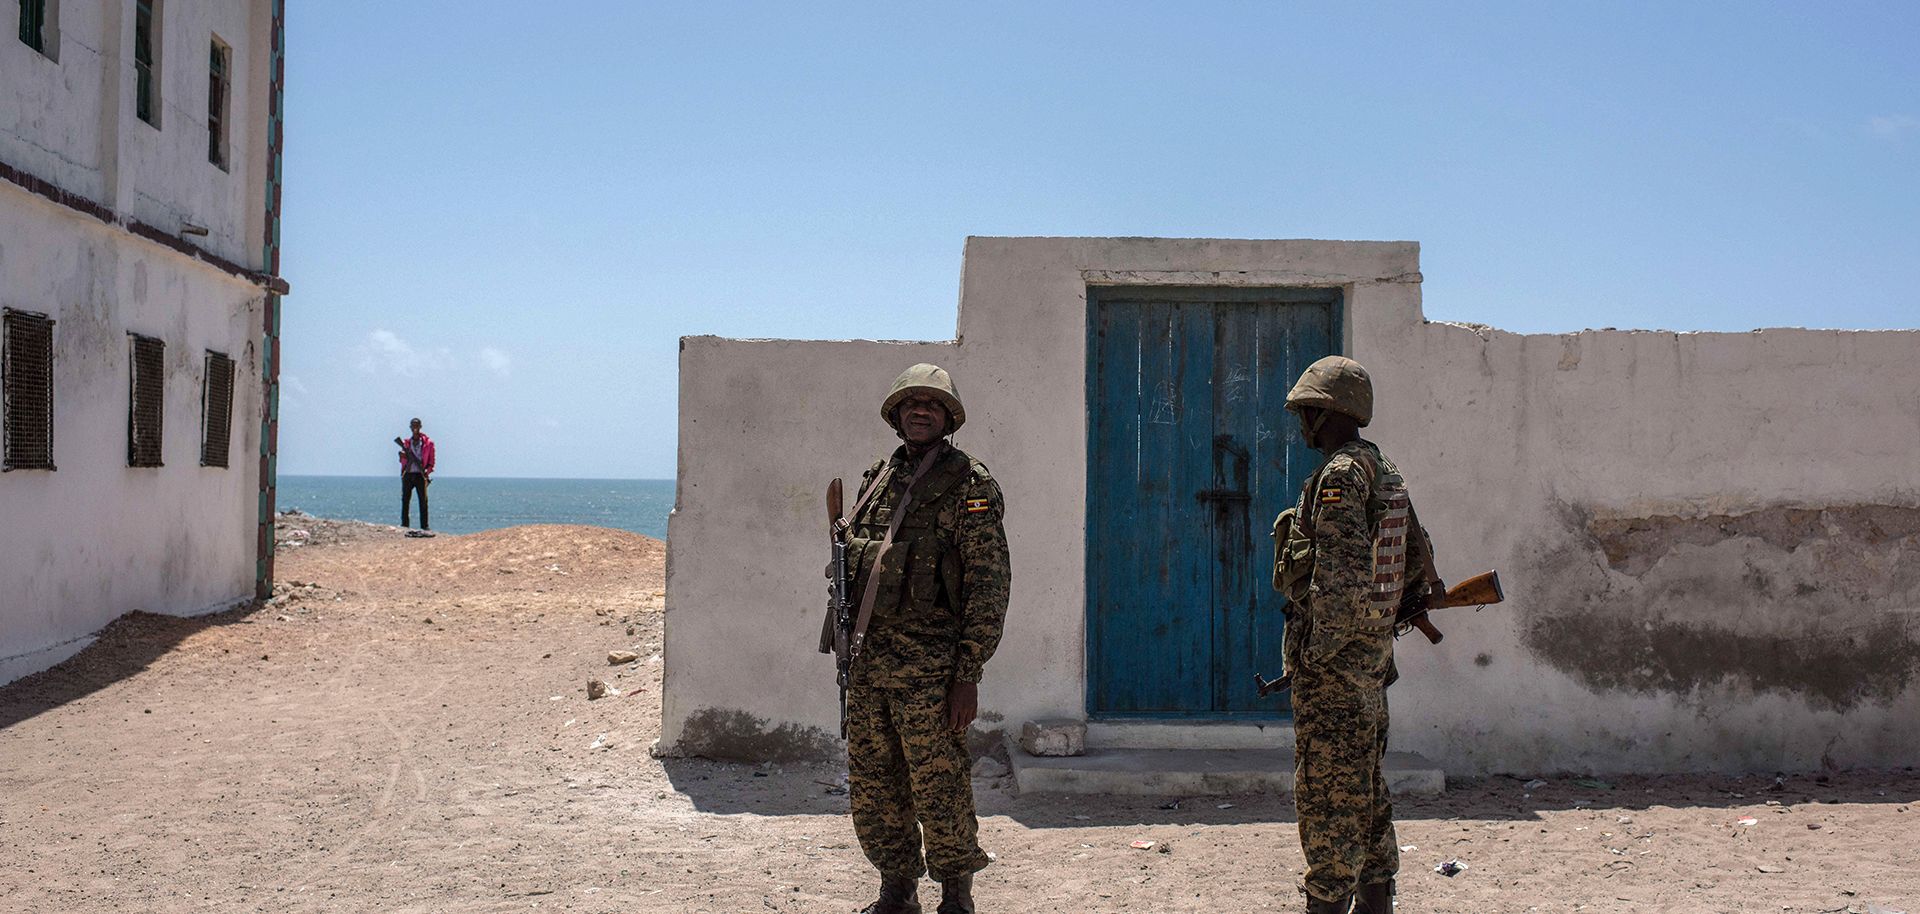 In Somalia, Political Progress Comes at a Price